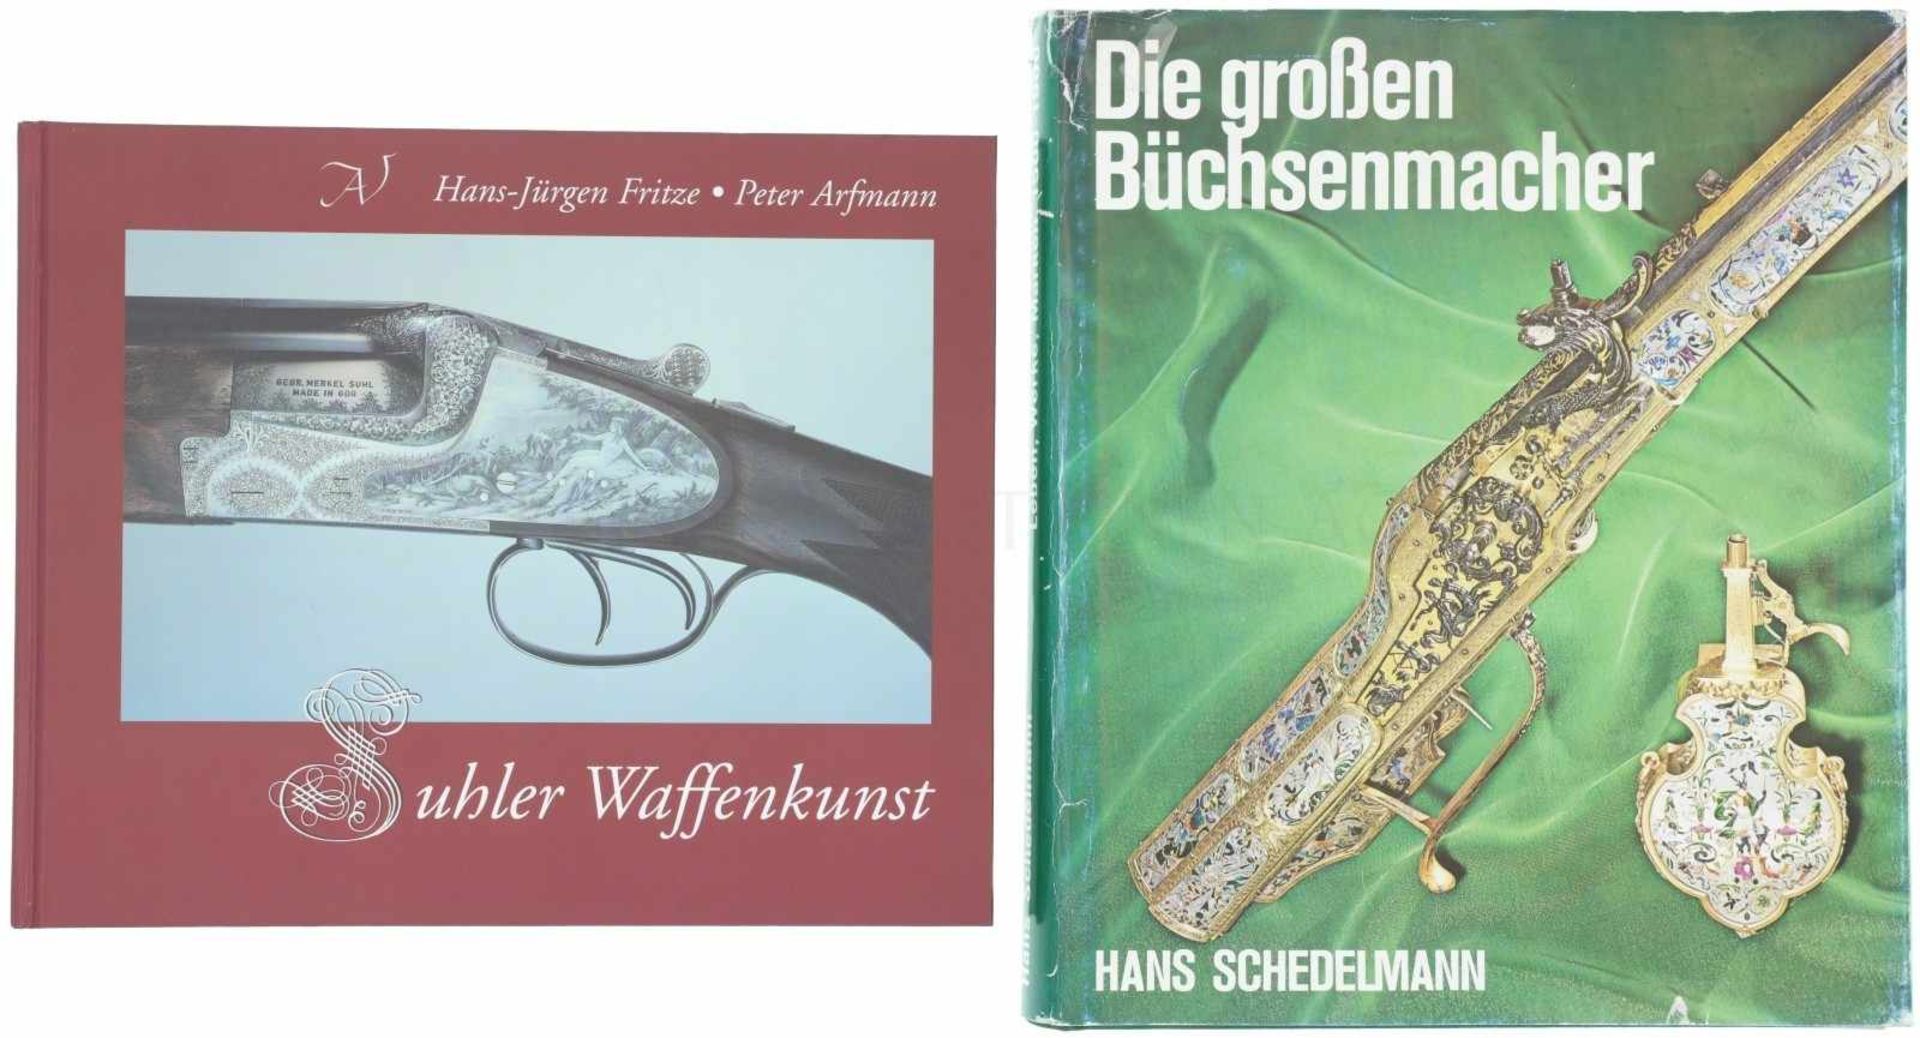 Konvolut von 2 Büchern 1. Suhler Waffenkunst, Zur Geschichte der Suhler Feuerwaffenherstellung, Band